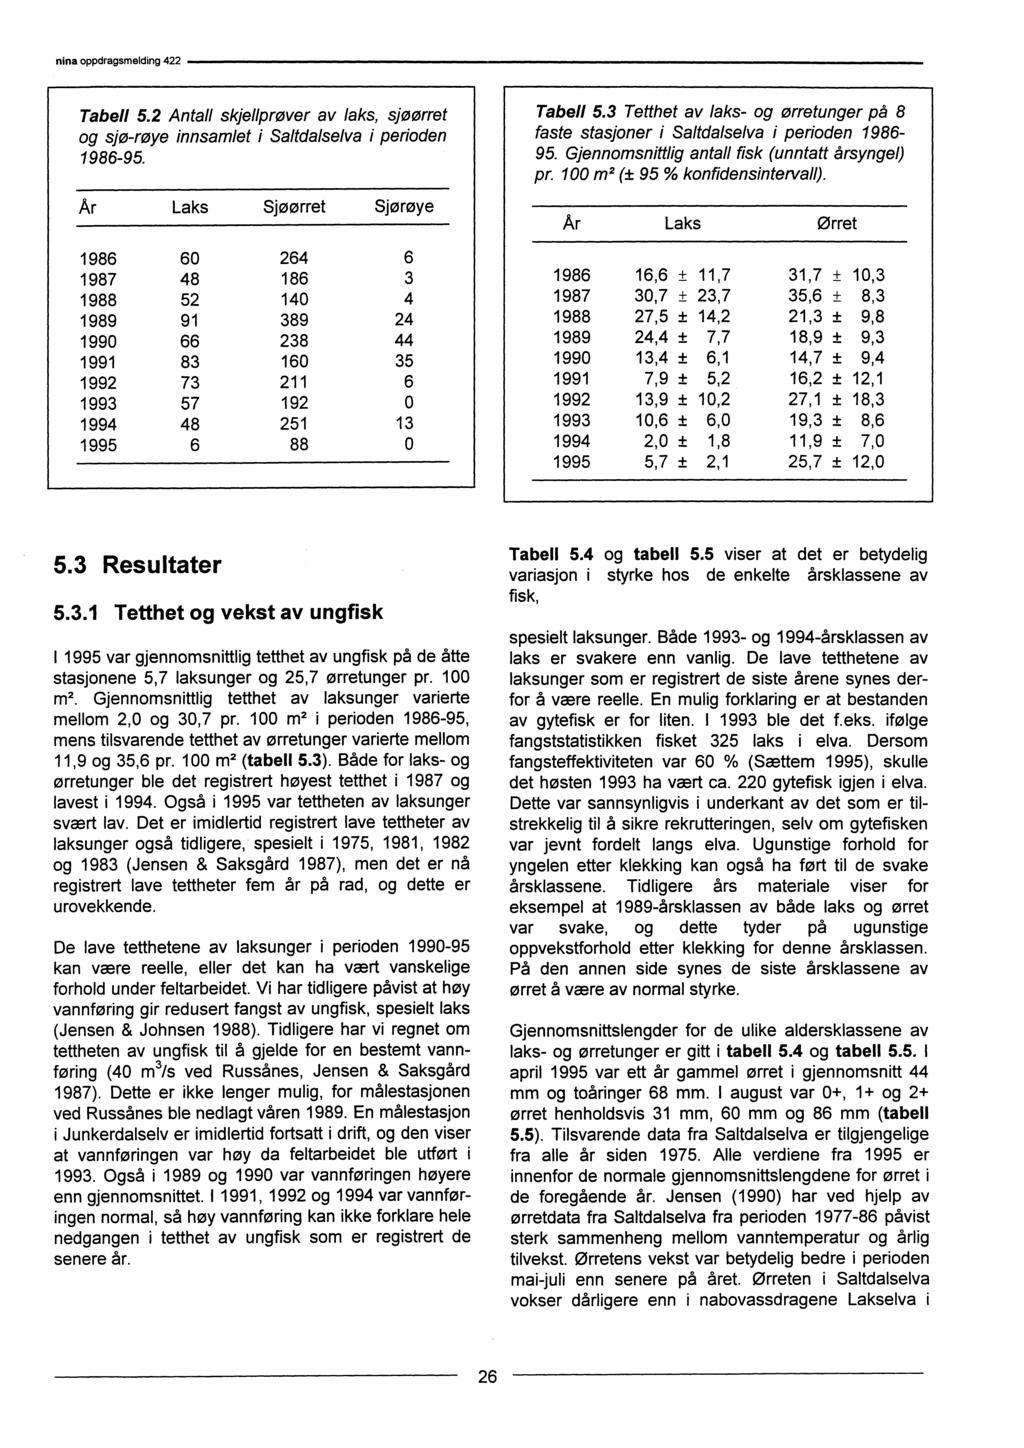 Tabell 5.2 Antall skjellprøver av laks, sjøørret og sjø-røye innsamlet i Saltdalselva i perioden 1986-95. Ar Laks Sjøørret Sjørøye Tabell 5.